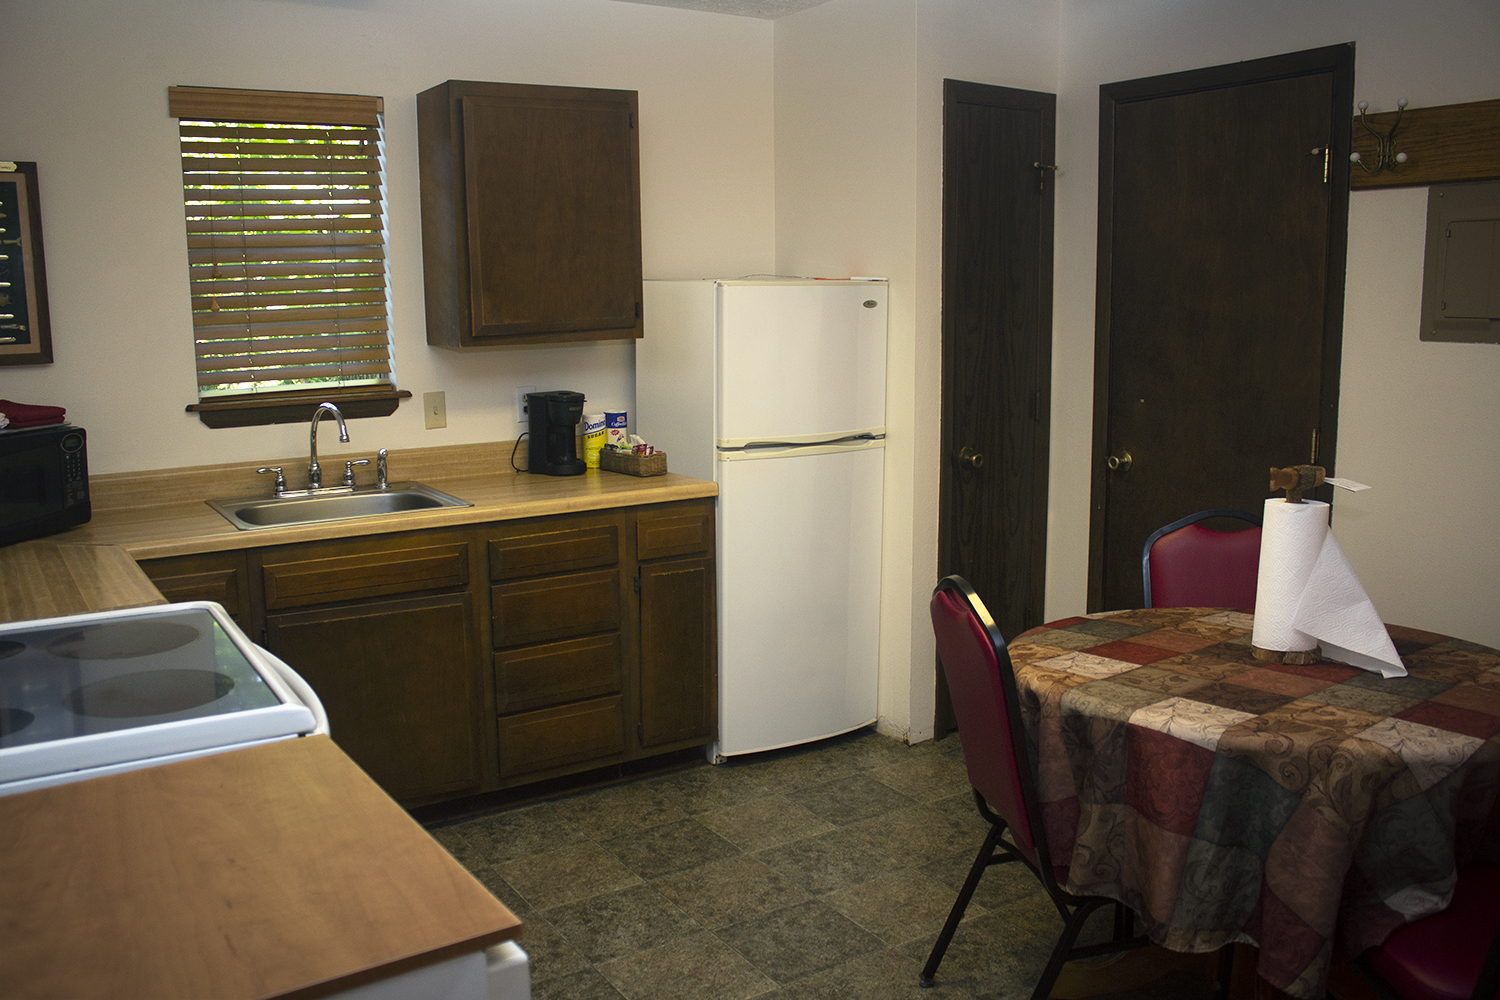 Cabin 8 kitchen.jpg